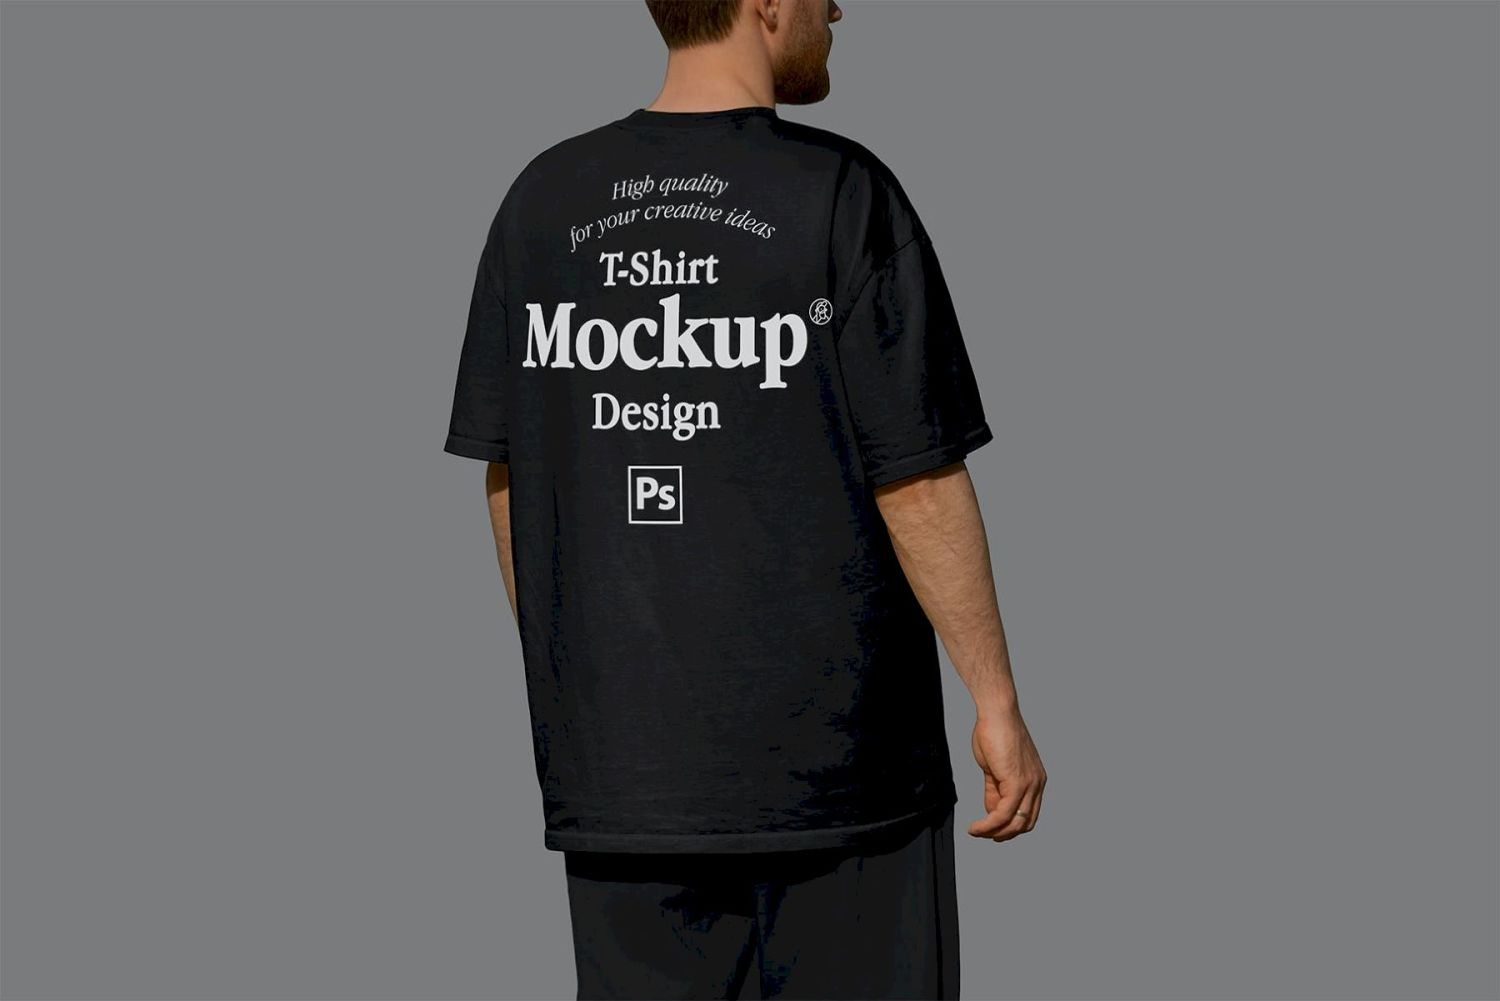 T 恤样机设计 T-shirt Mock-up Design插图2